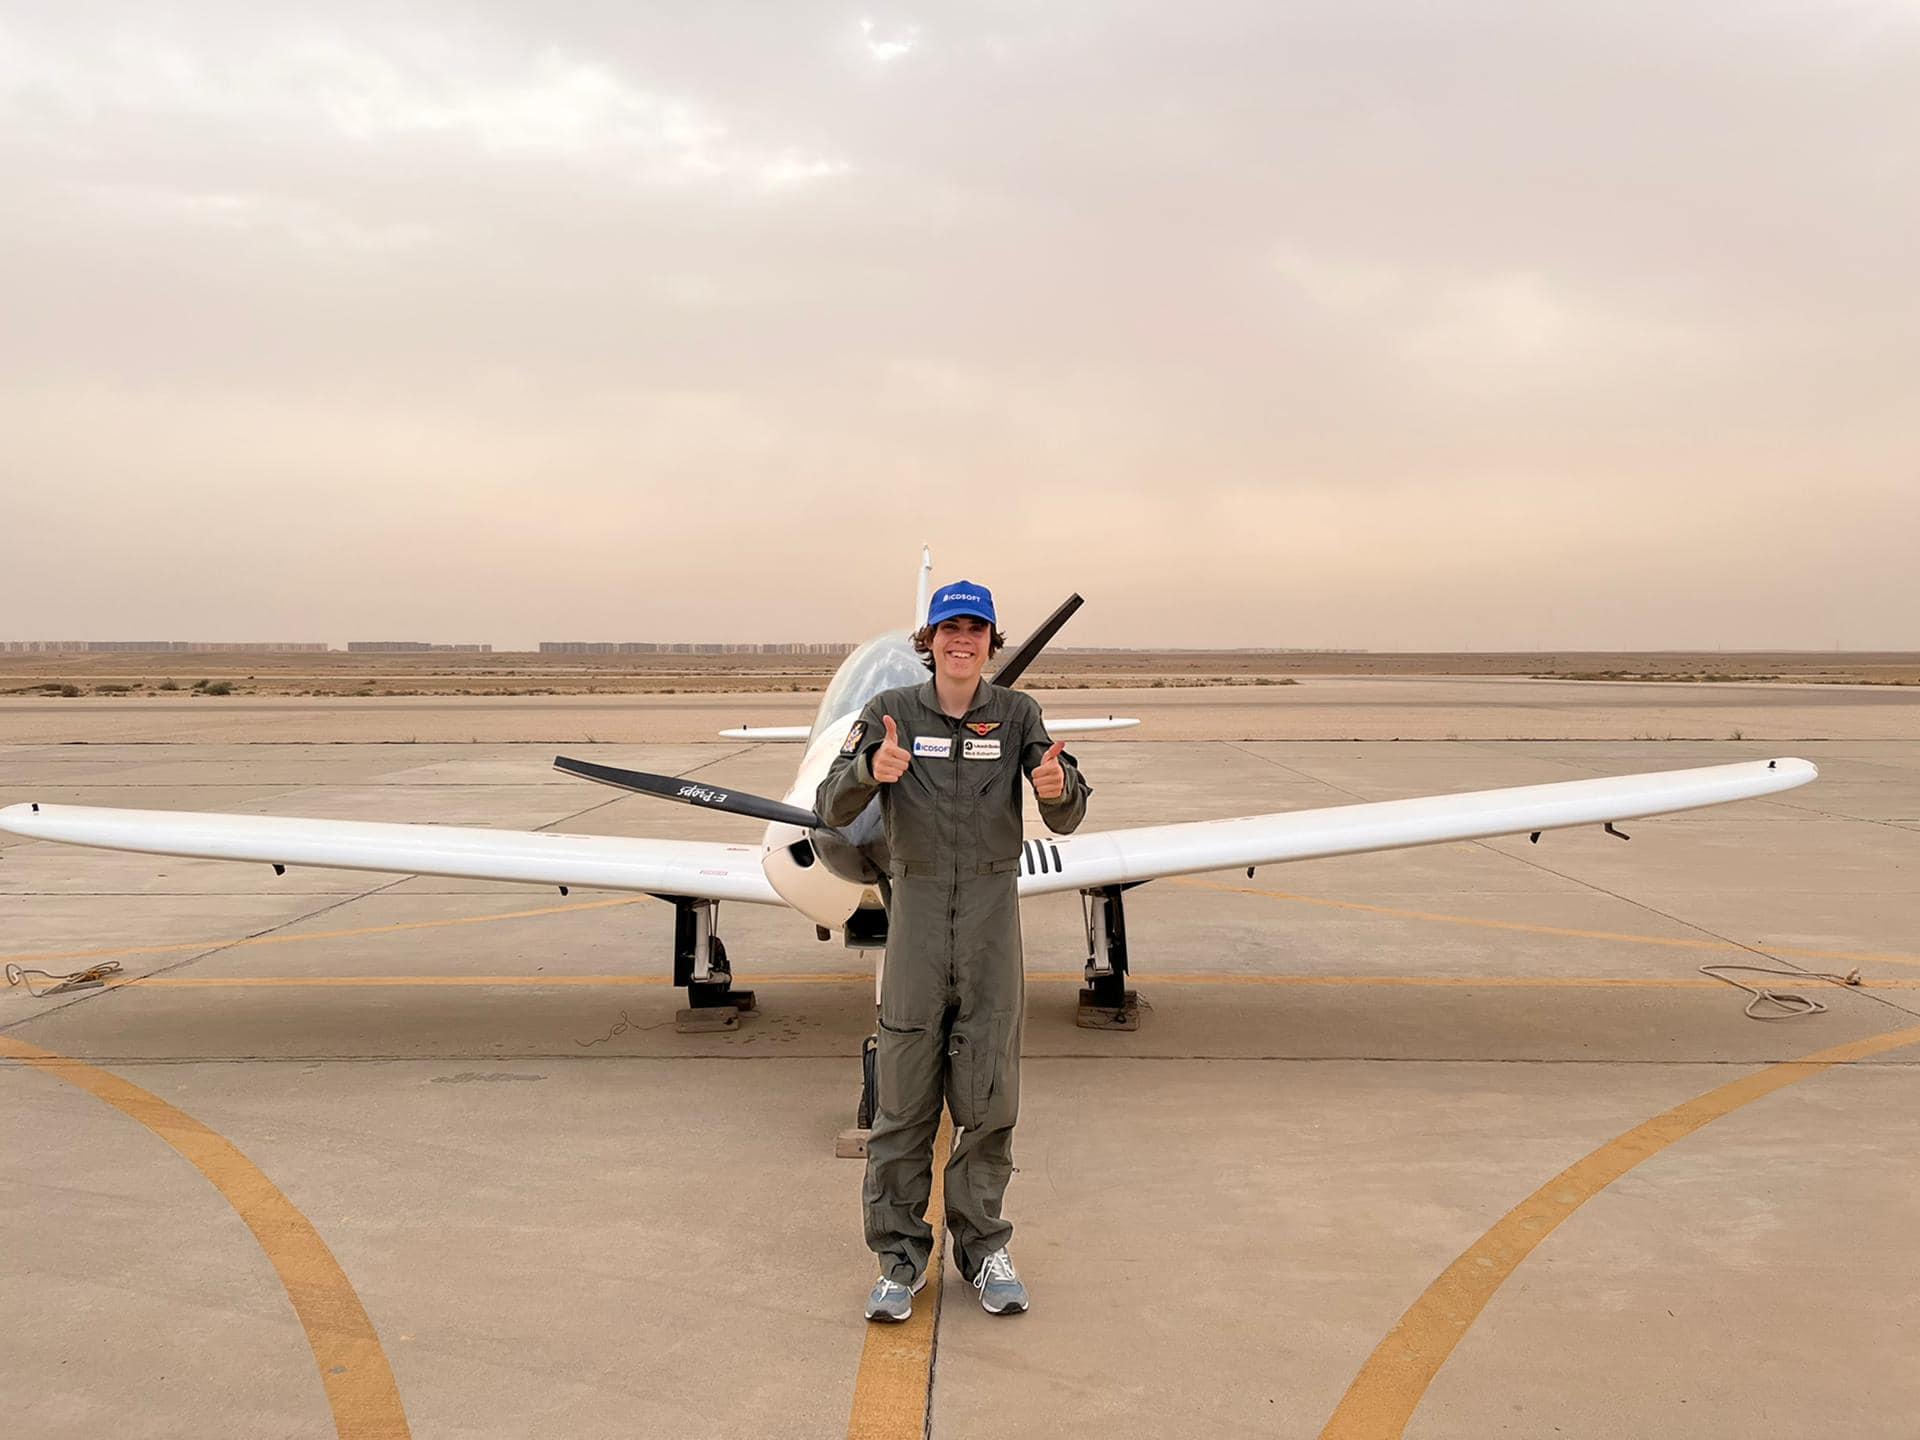 مارك روثرفورد أصغر طيار مع طائرته الخاصة بمصر